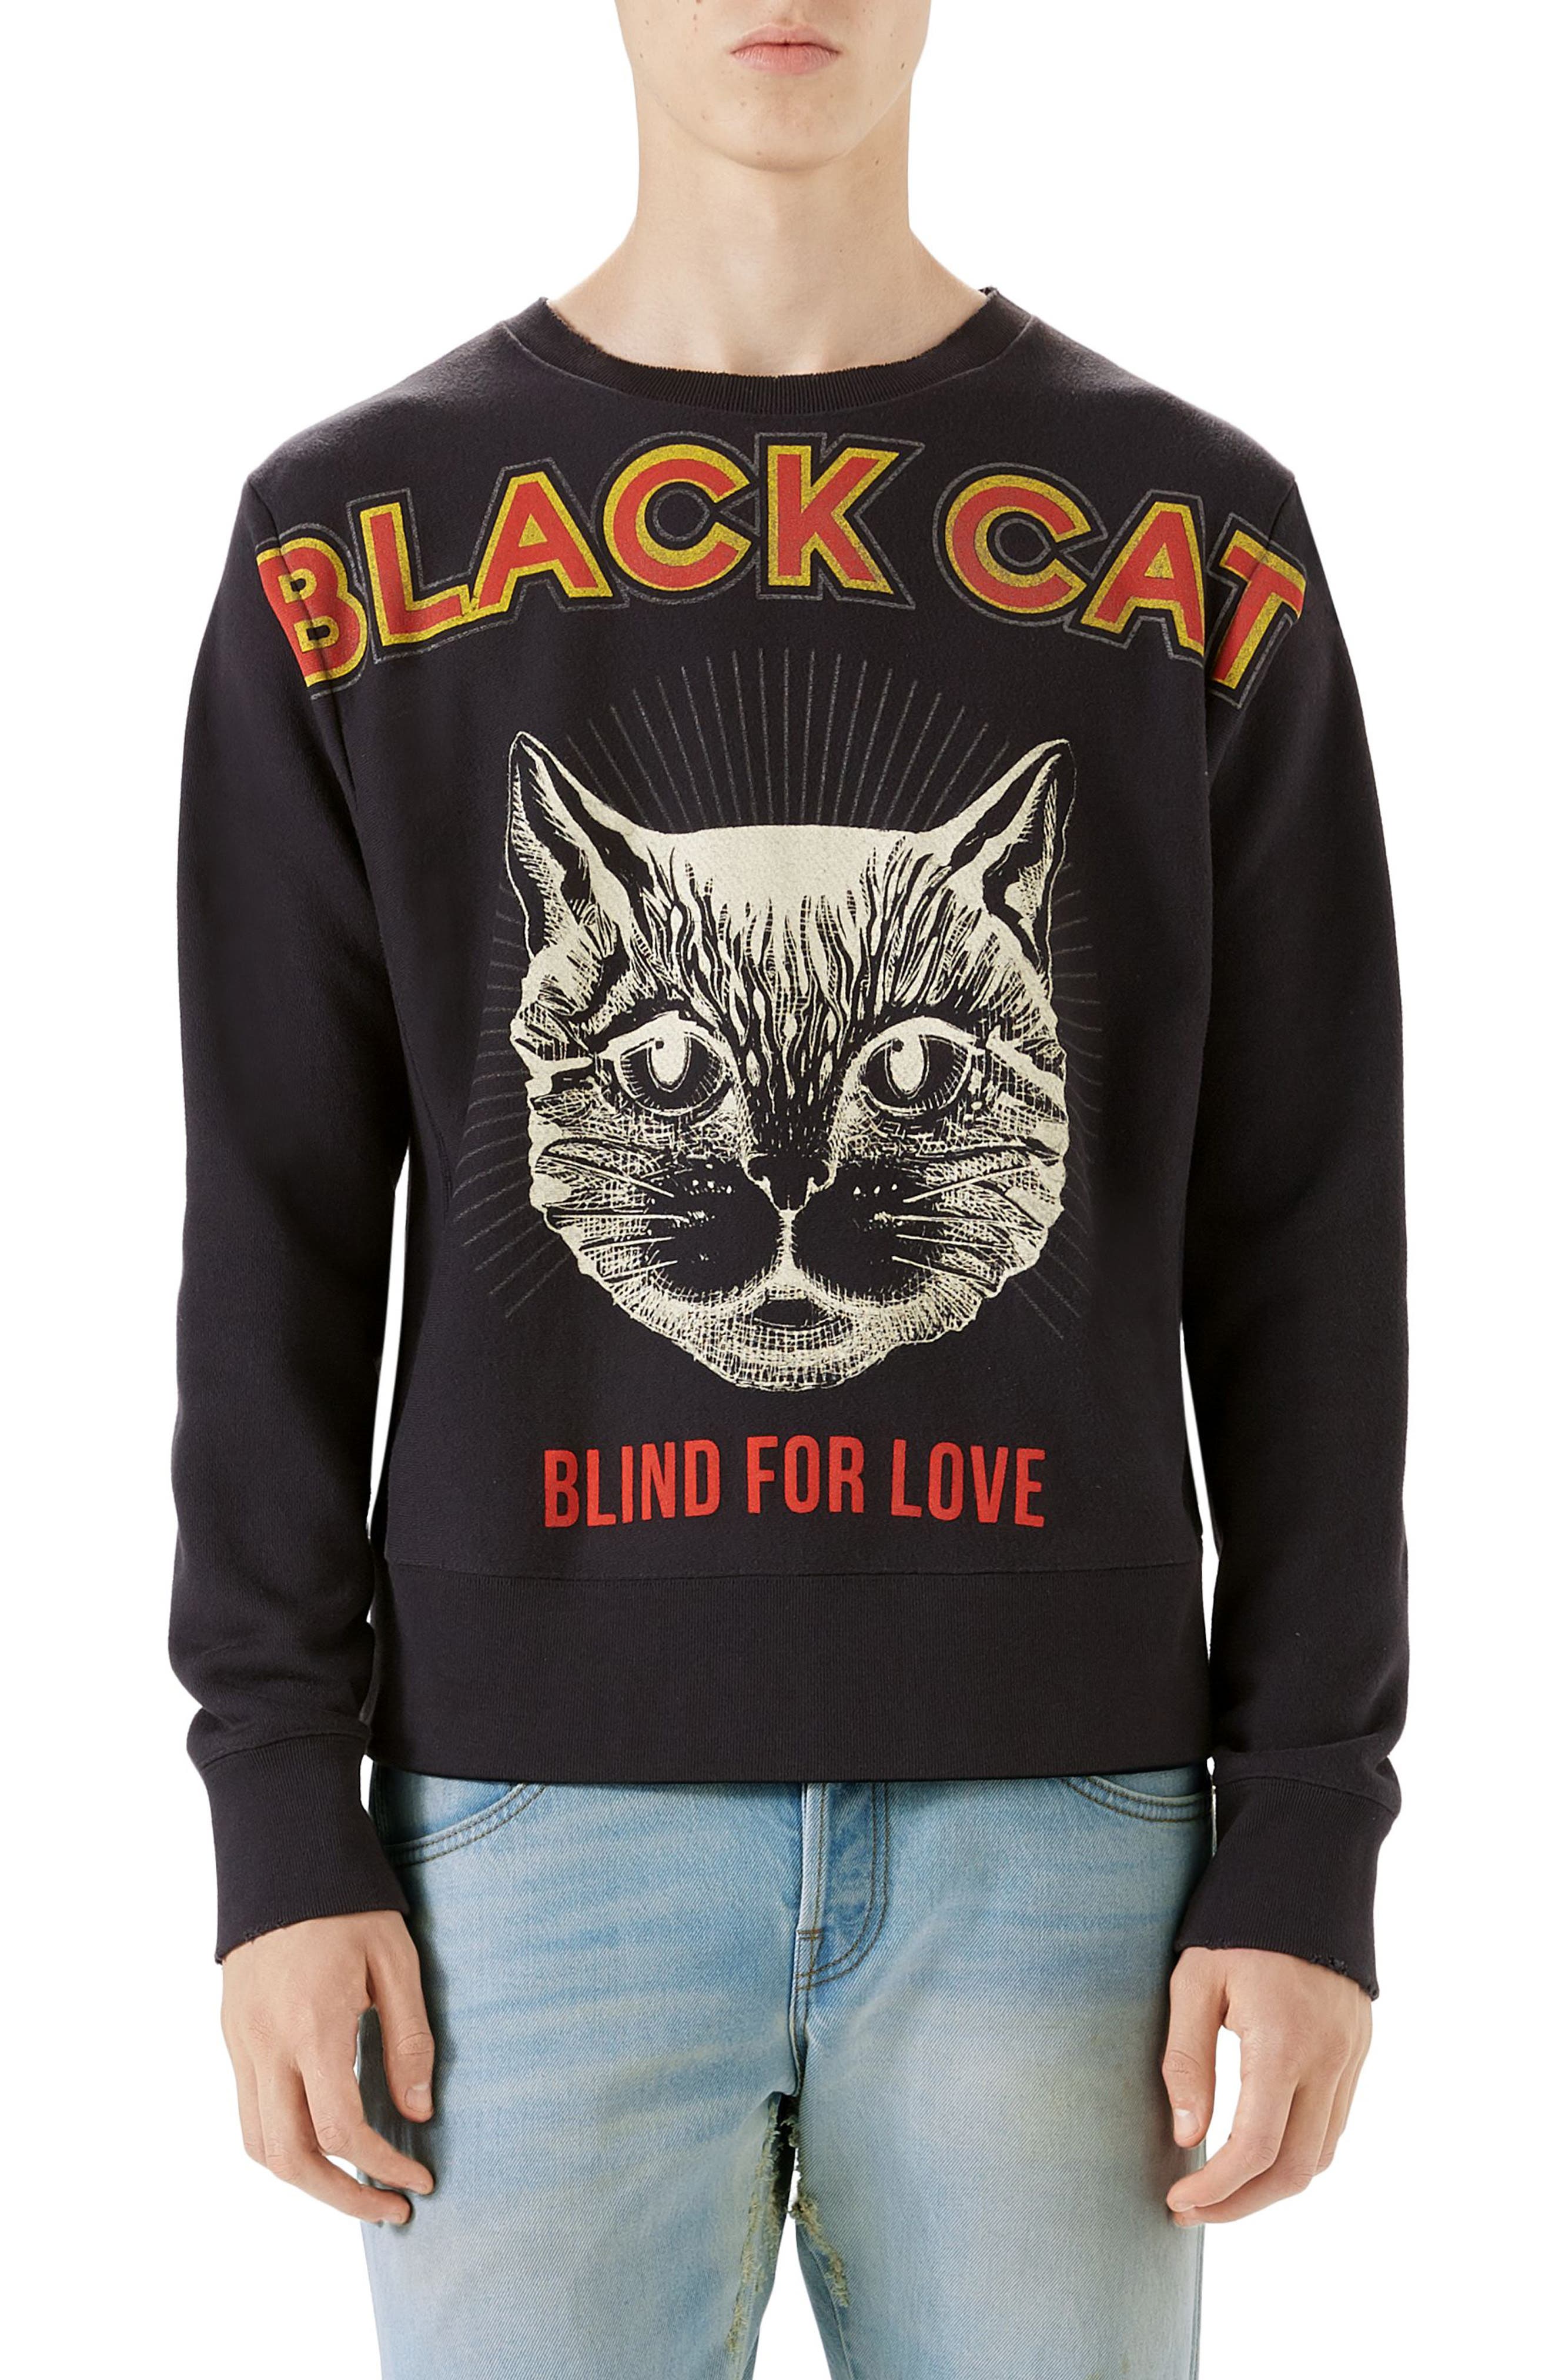 black cat sweater gucci